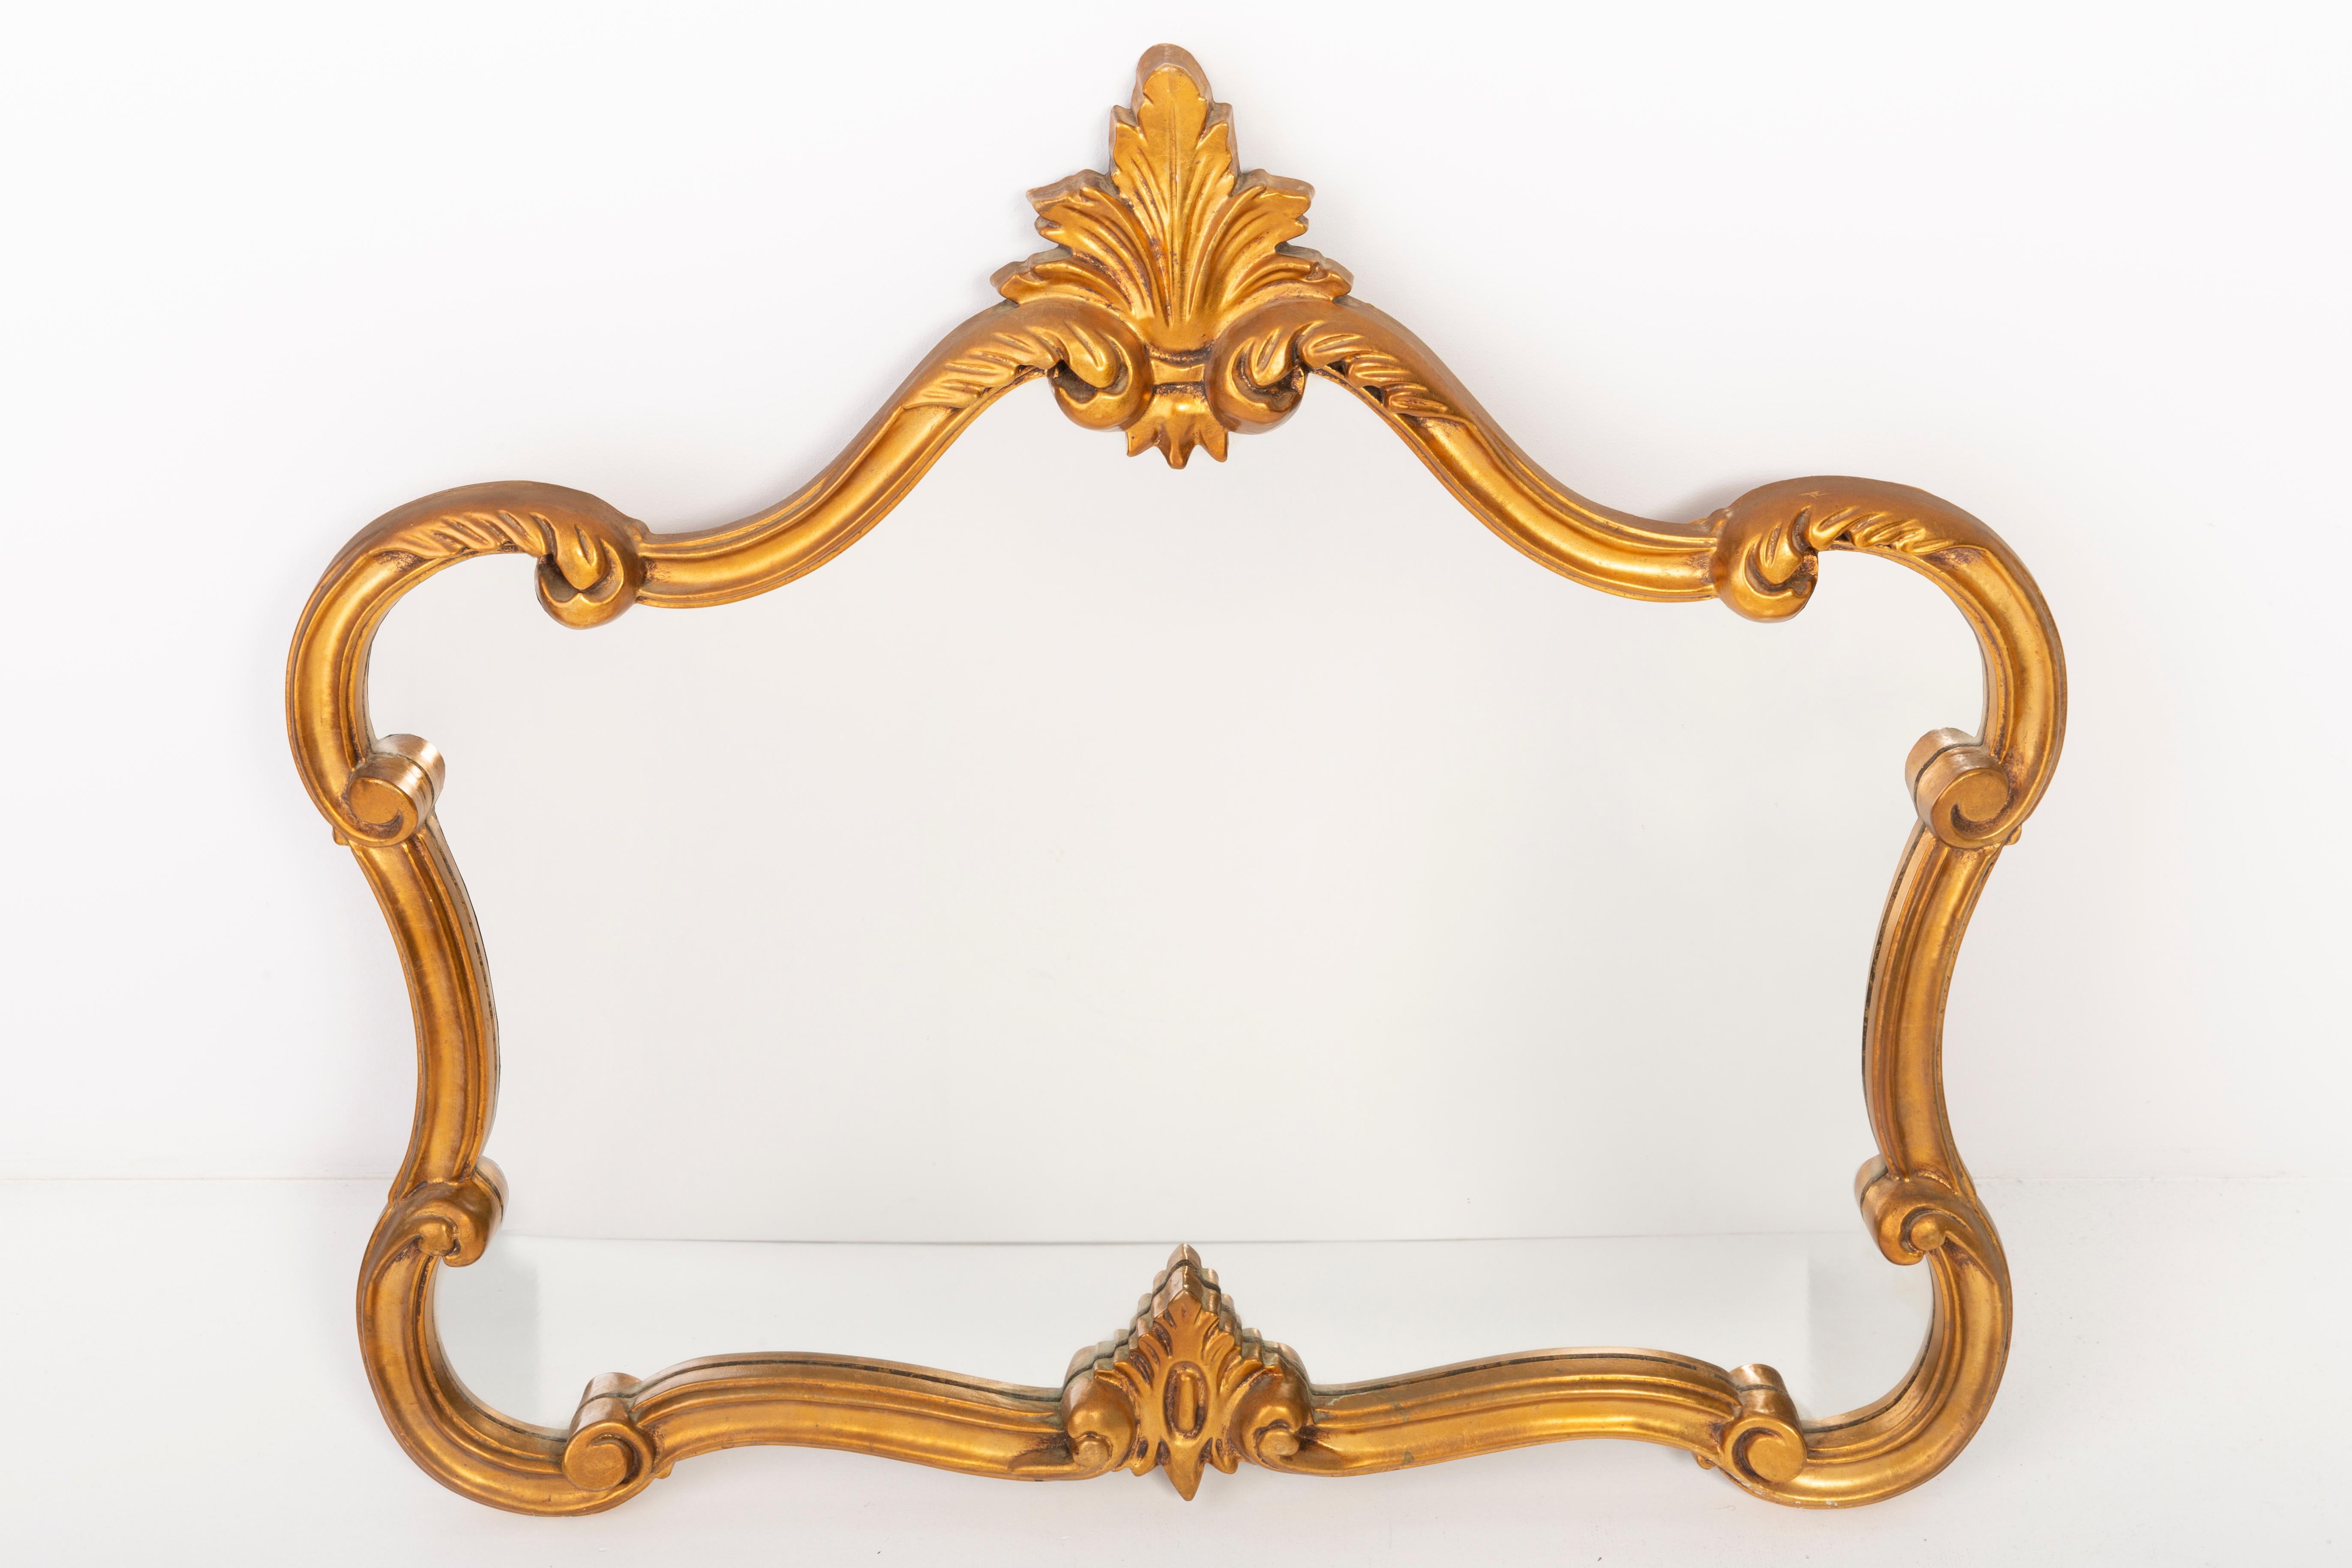 Ein Spiegel in einem goldenen Zierrahmen mit Blumen. Der Rahmen ist aus Holz gefertigt. Perfekt für Schlafzimmer als Dekoration über dem Bett. Spiegel ist in sehr gutem Vintage-Zustand, keine Schäden oder Risse im Rahmen. Original Glas. Ein schönes